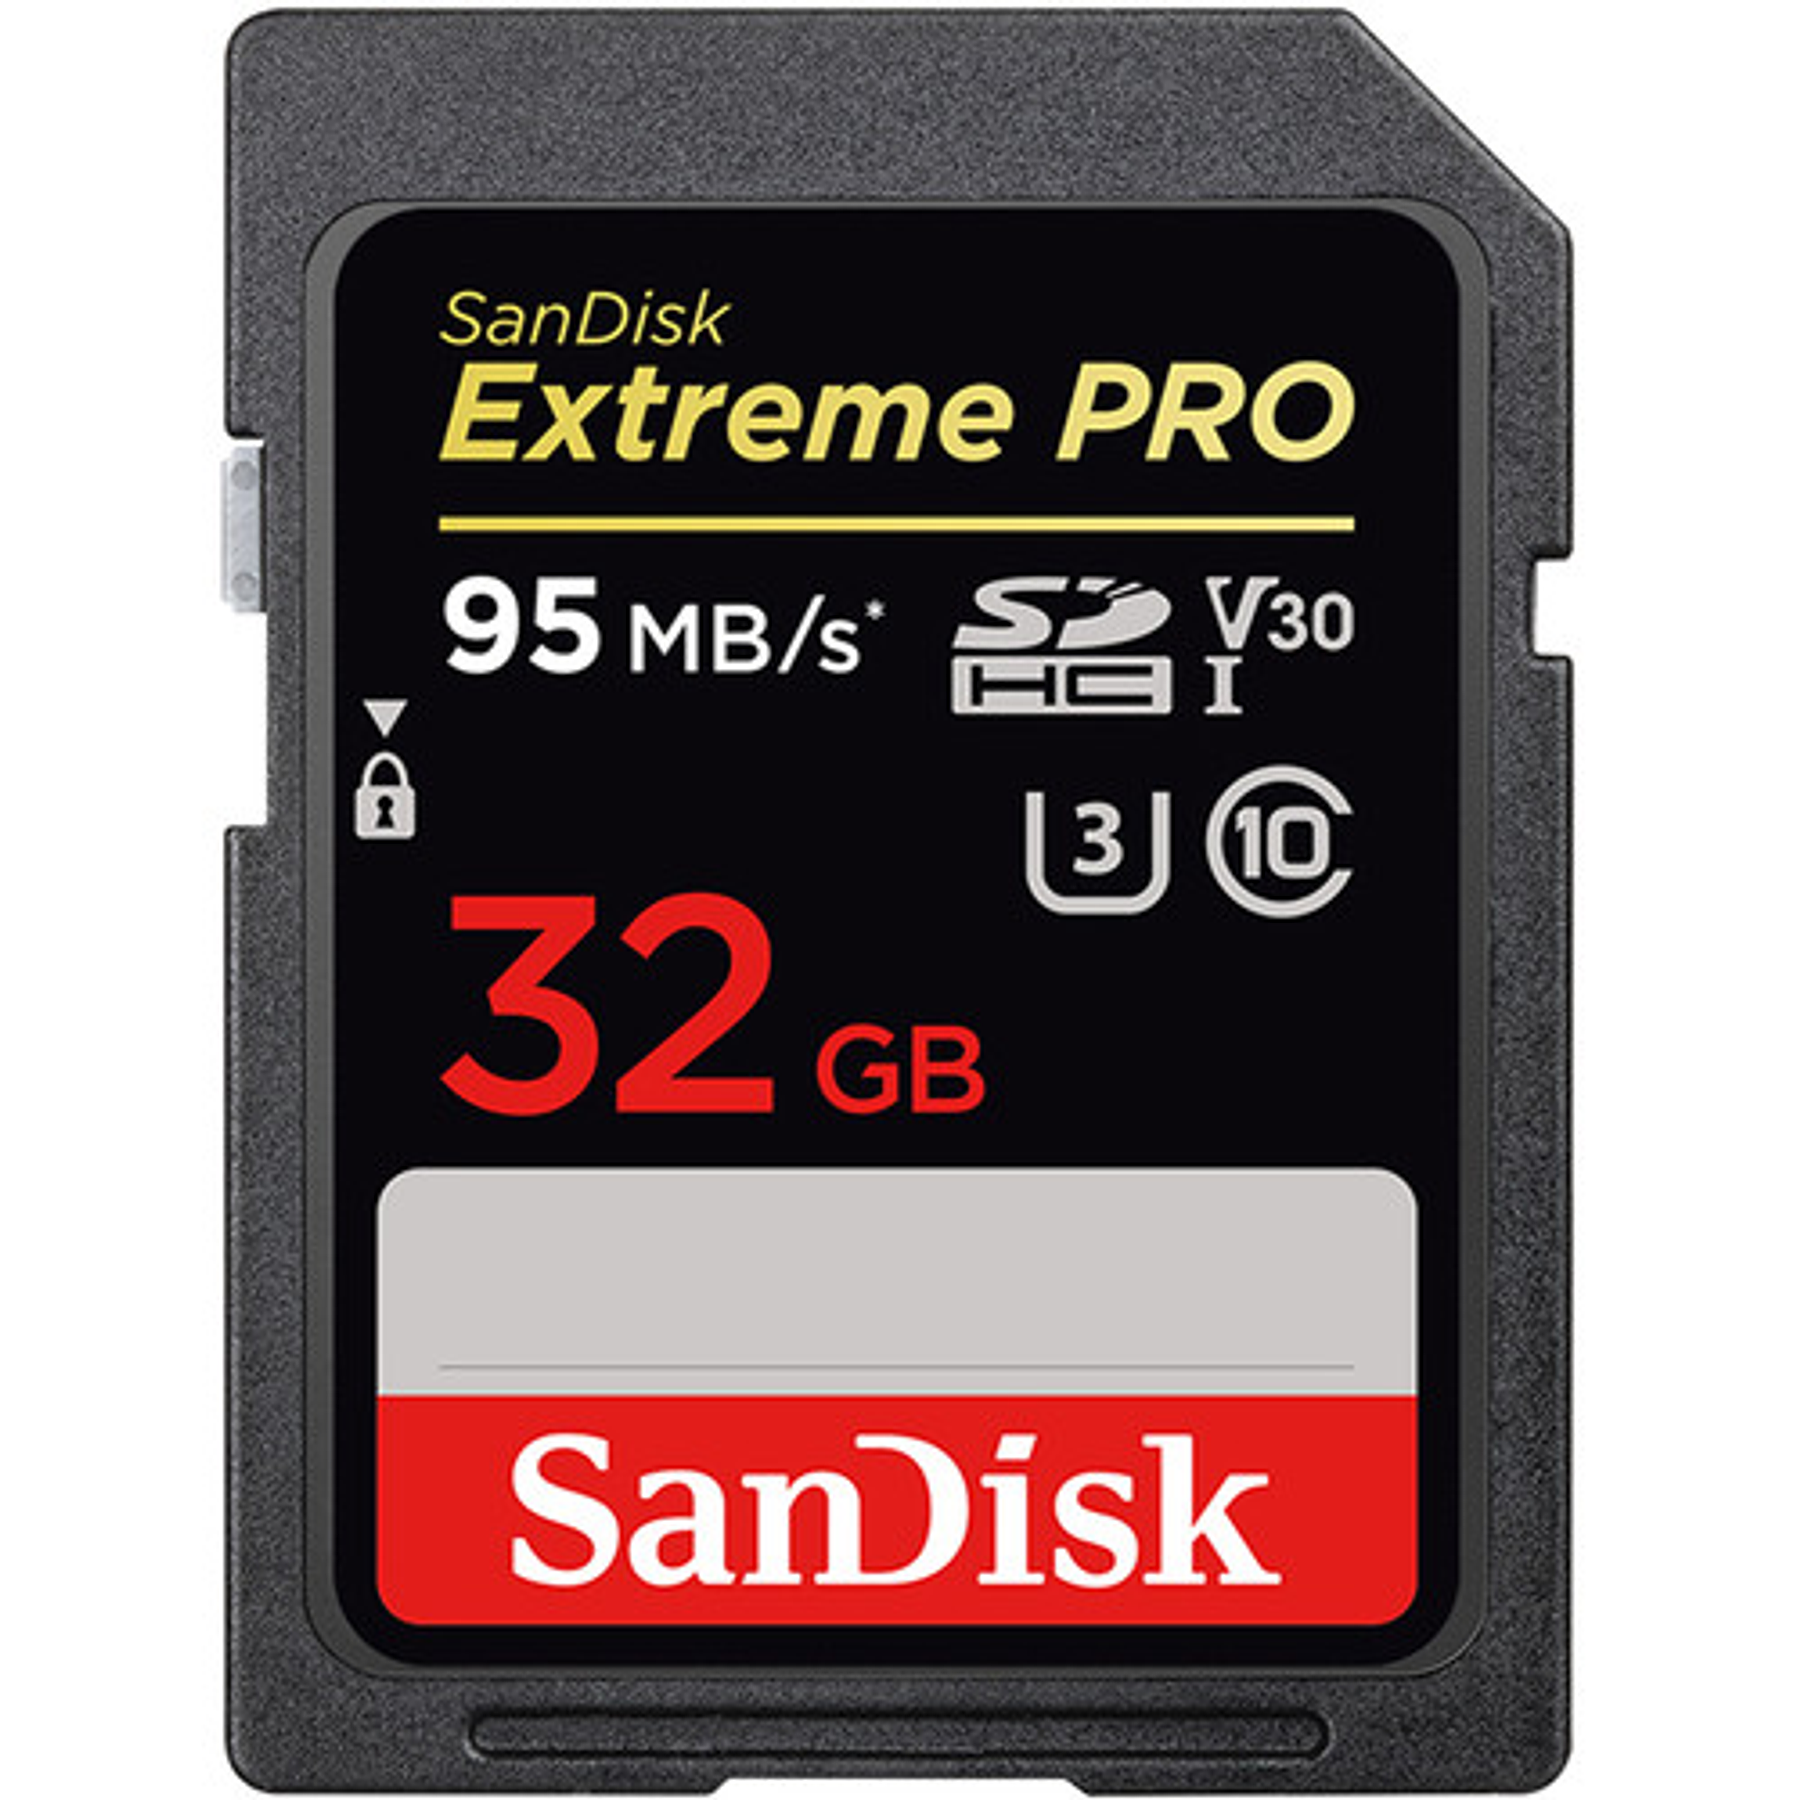 TARJETA DE MEMORIA SANDISK SD 32GB EXTREMEPRO MODELO # SDSDX